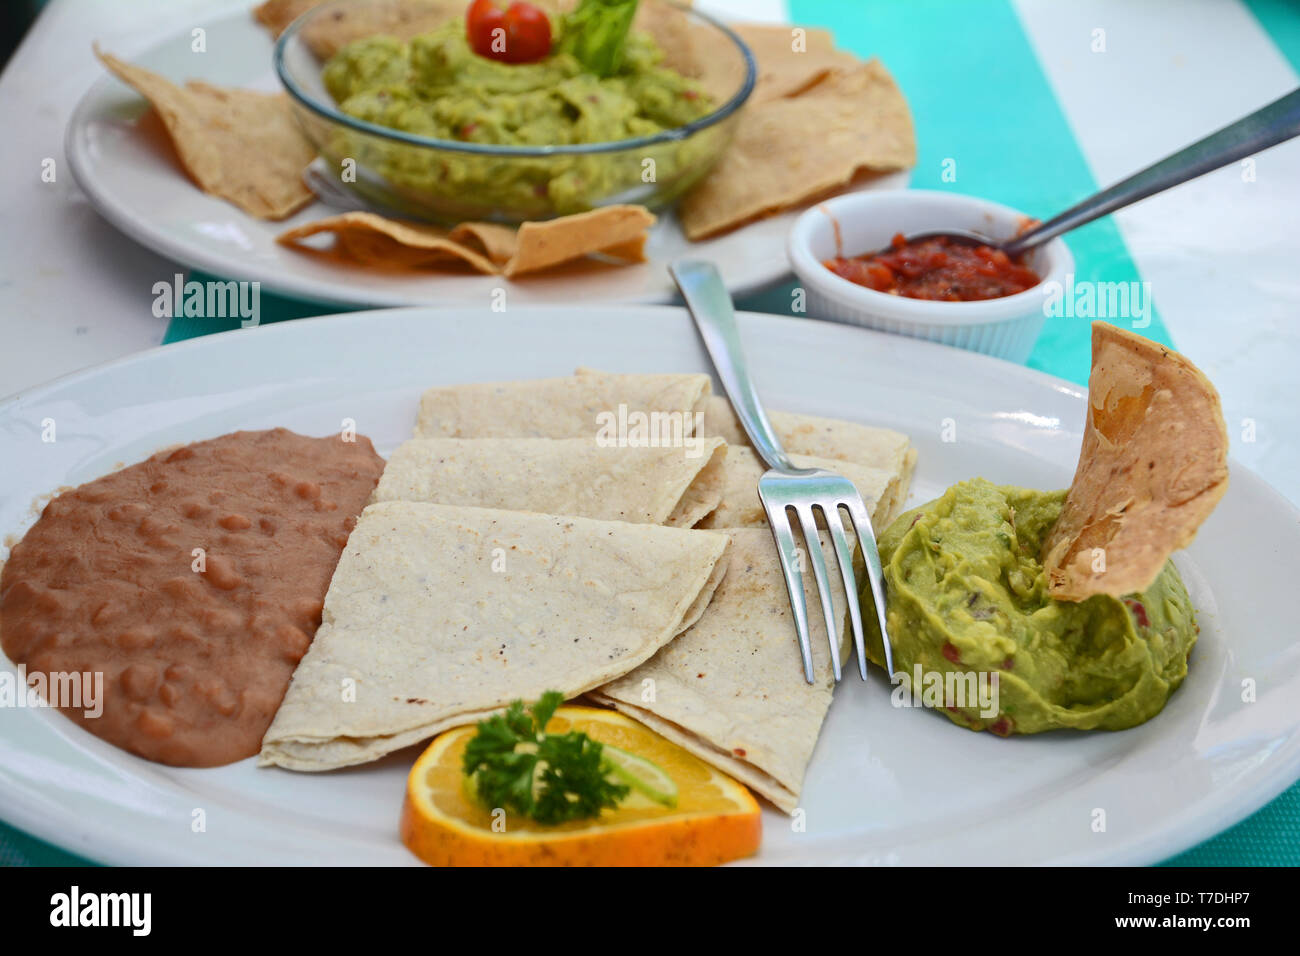 Tavolo con cibo composto da tortillas, fagioli, guacamole, salsa calda e piatti bianchi. Foto Stock